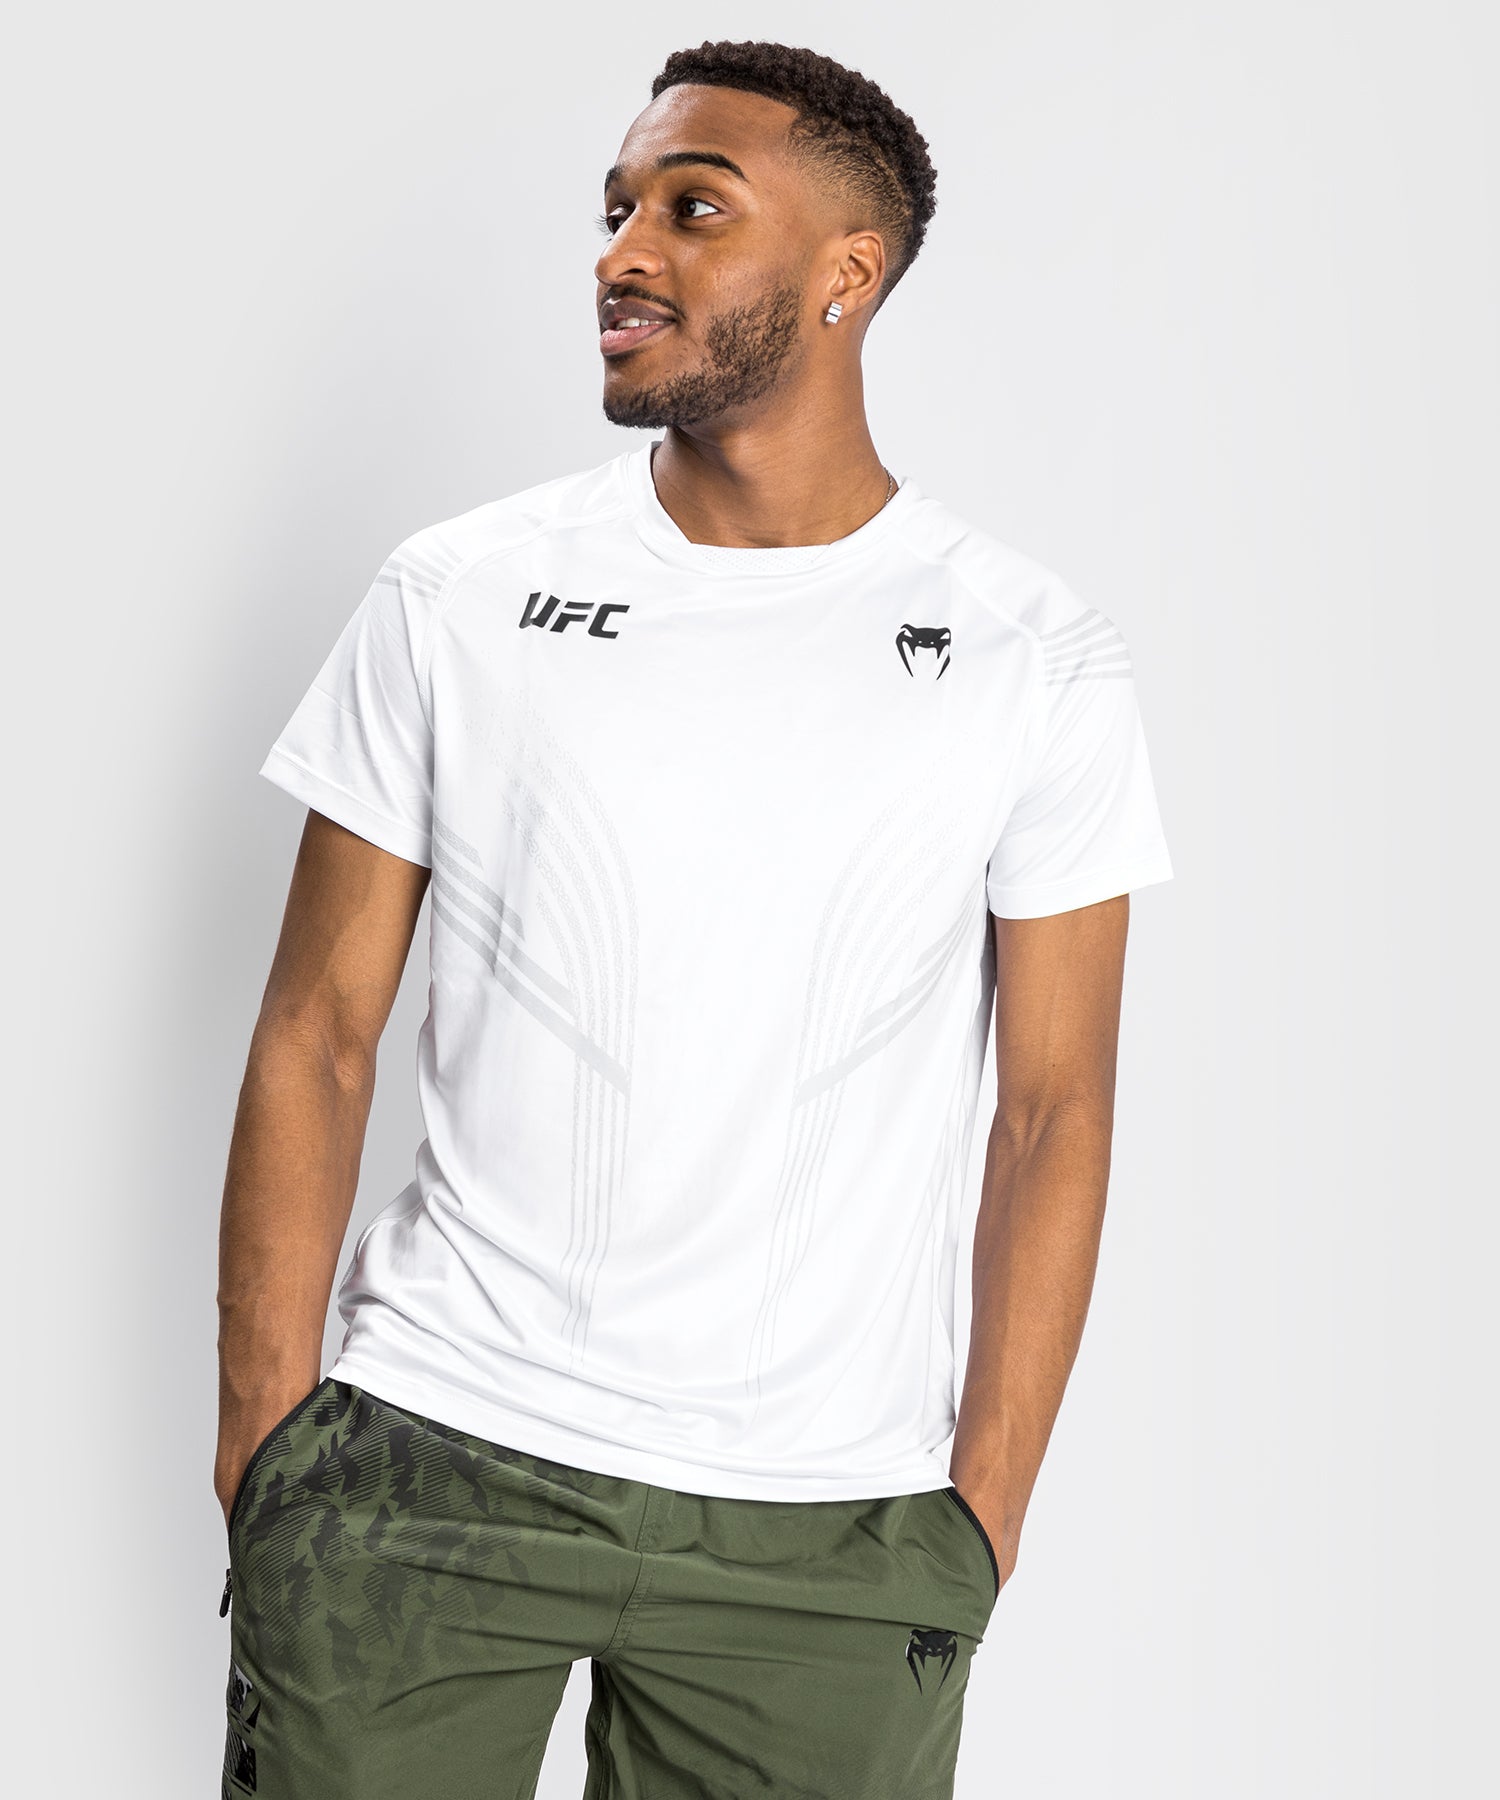 UFC Venum Performance Institute 2.0 Camiseta para Hombre - Gris